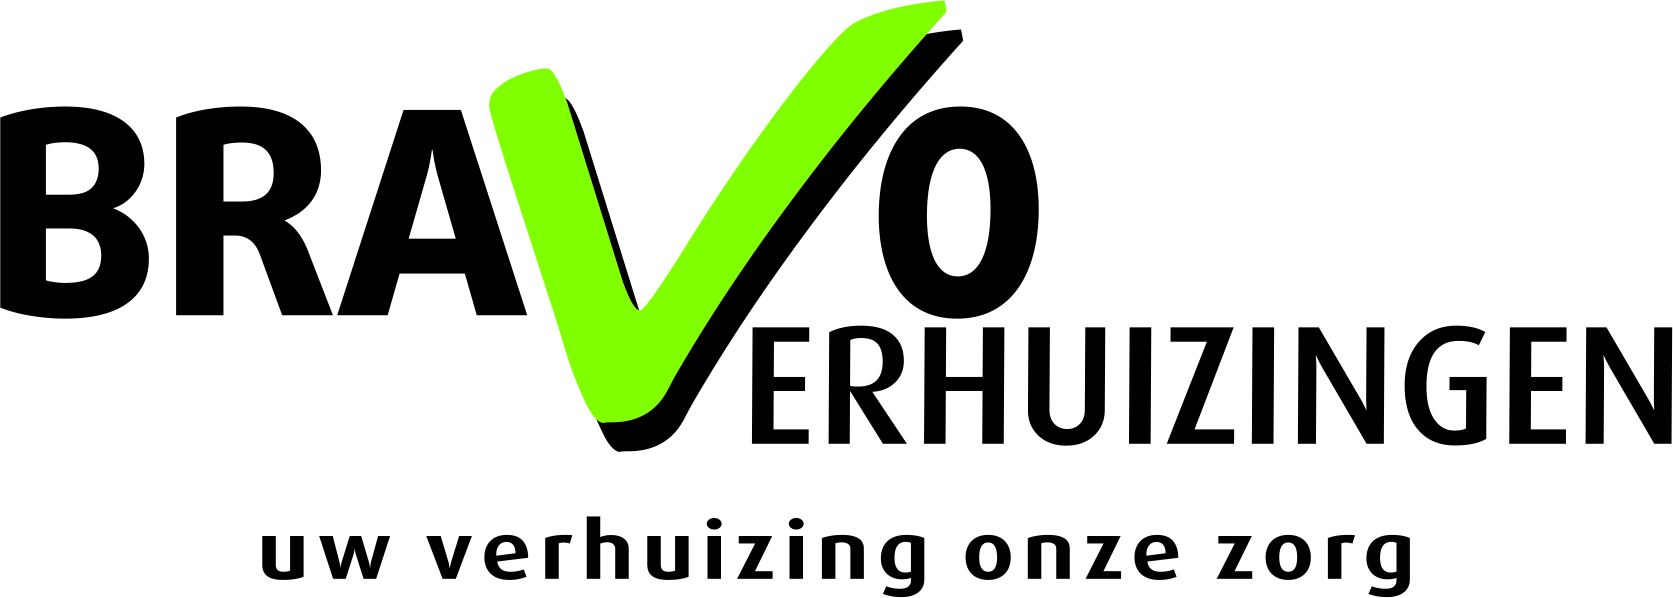 Logo Bravo Verhuizingen versie 1 0 4